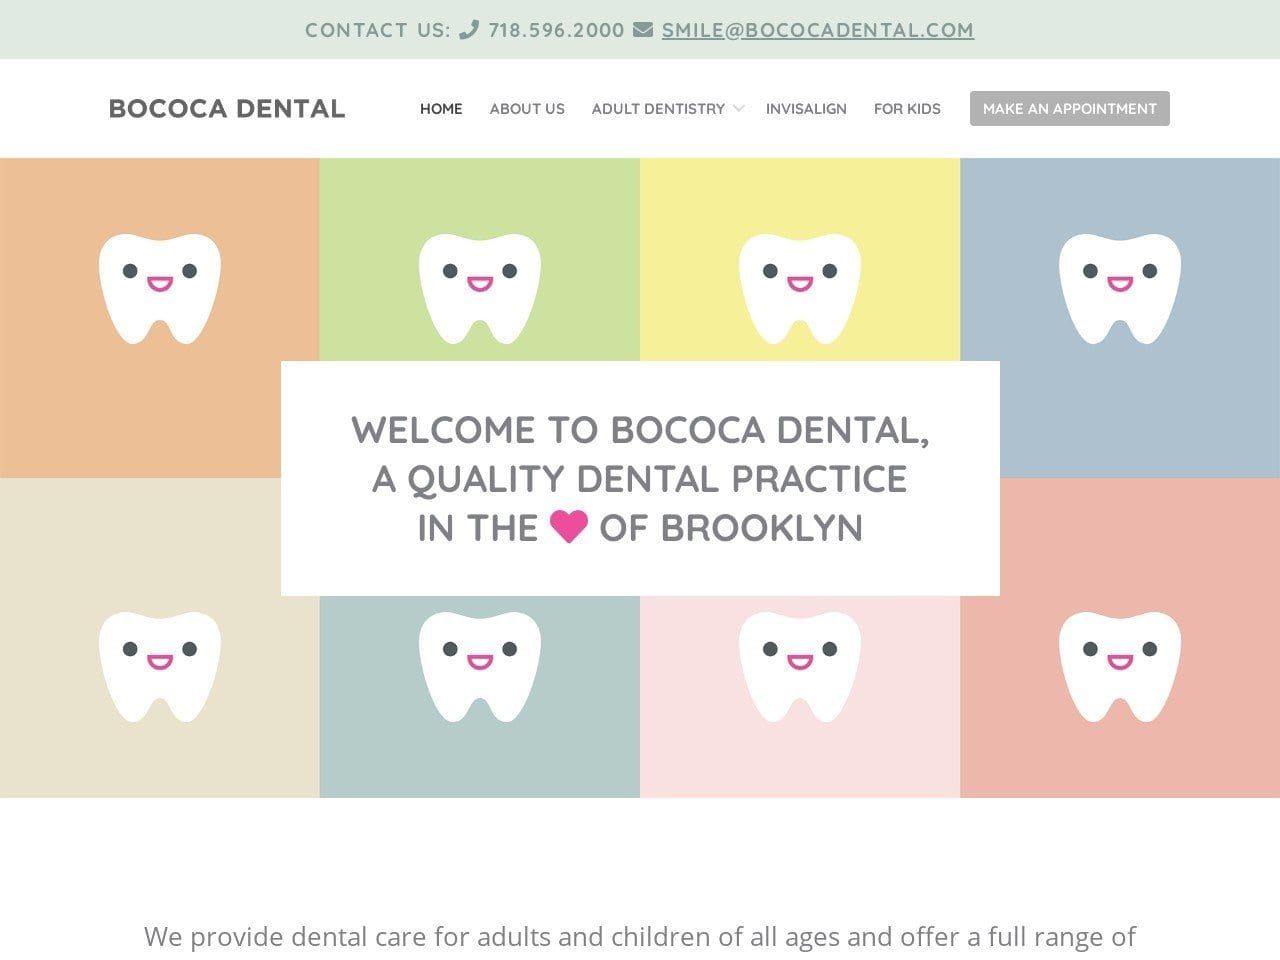 Bococa Dental Website Screenshot from bococadental.com